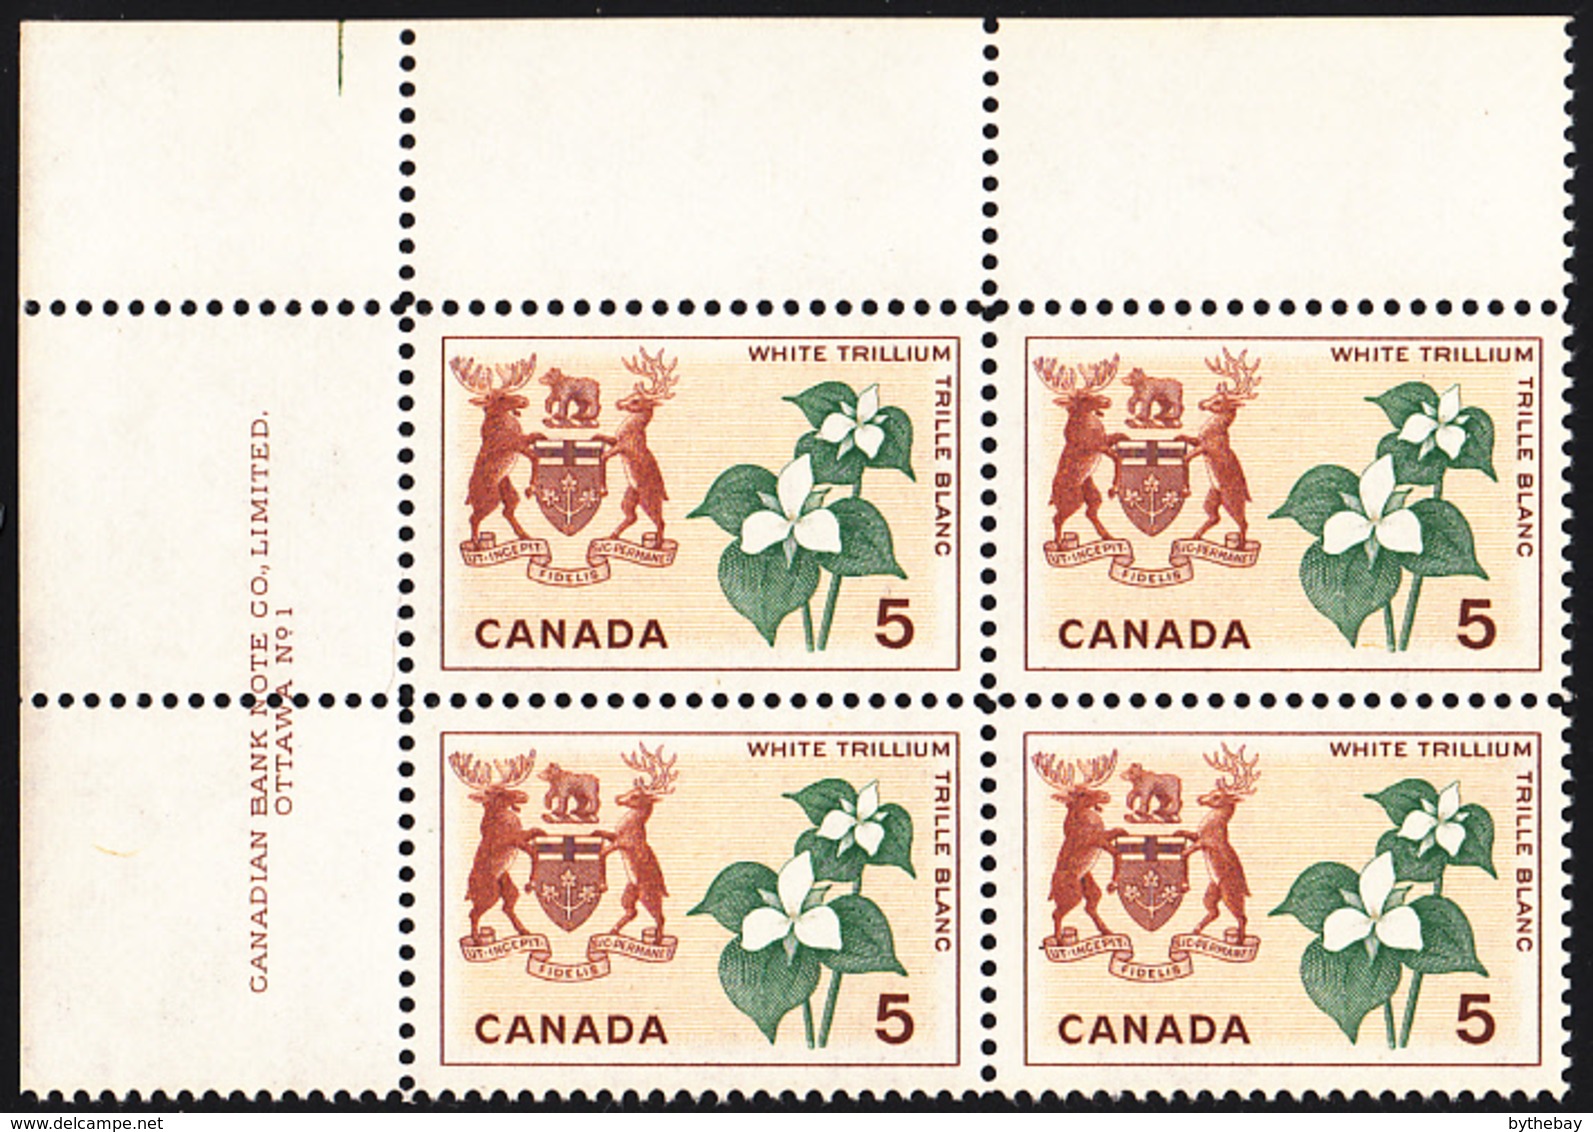 Canada 1964 MNH Sc #418 5c White Trillium Ontario Plate #1 UL - Numeri Di Tavola E Bordi Di Foglio